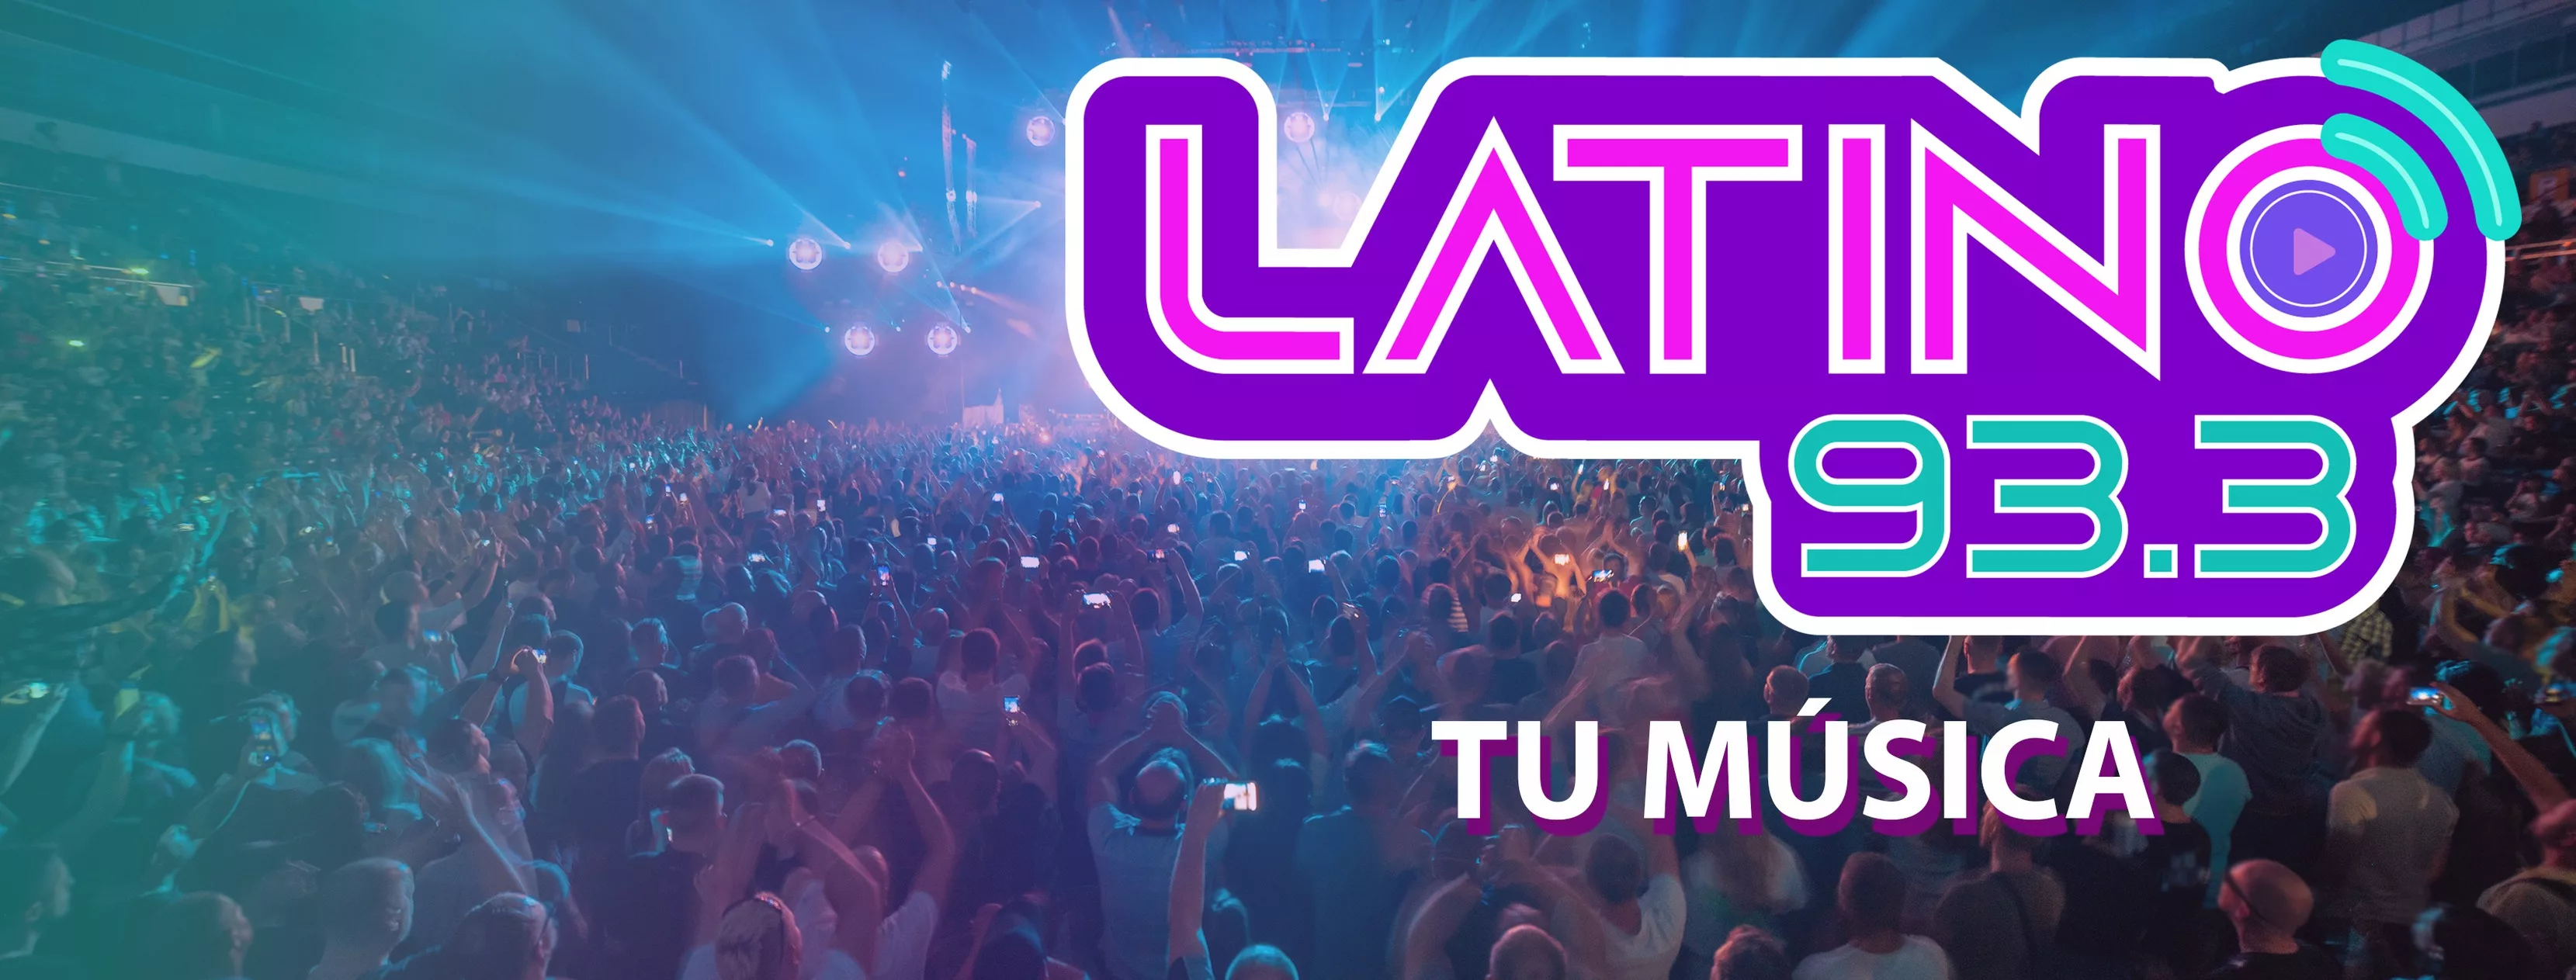 Latino 933 - tu musica